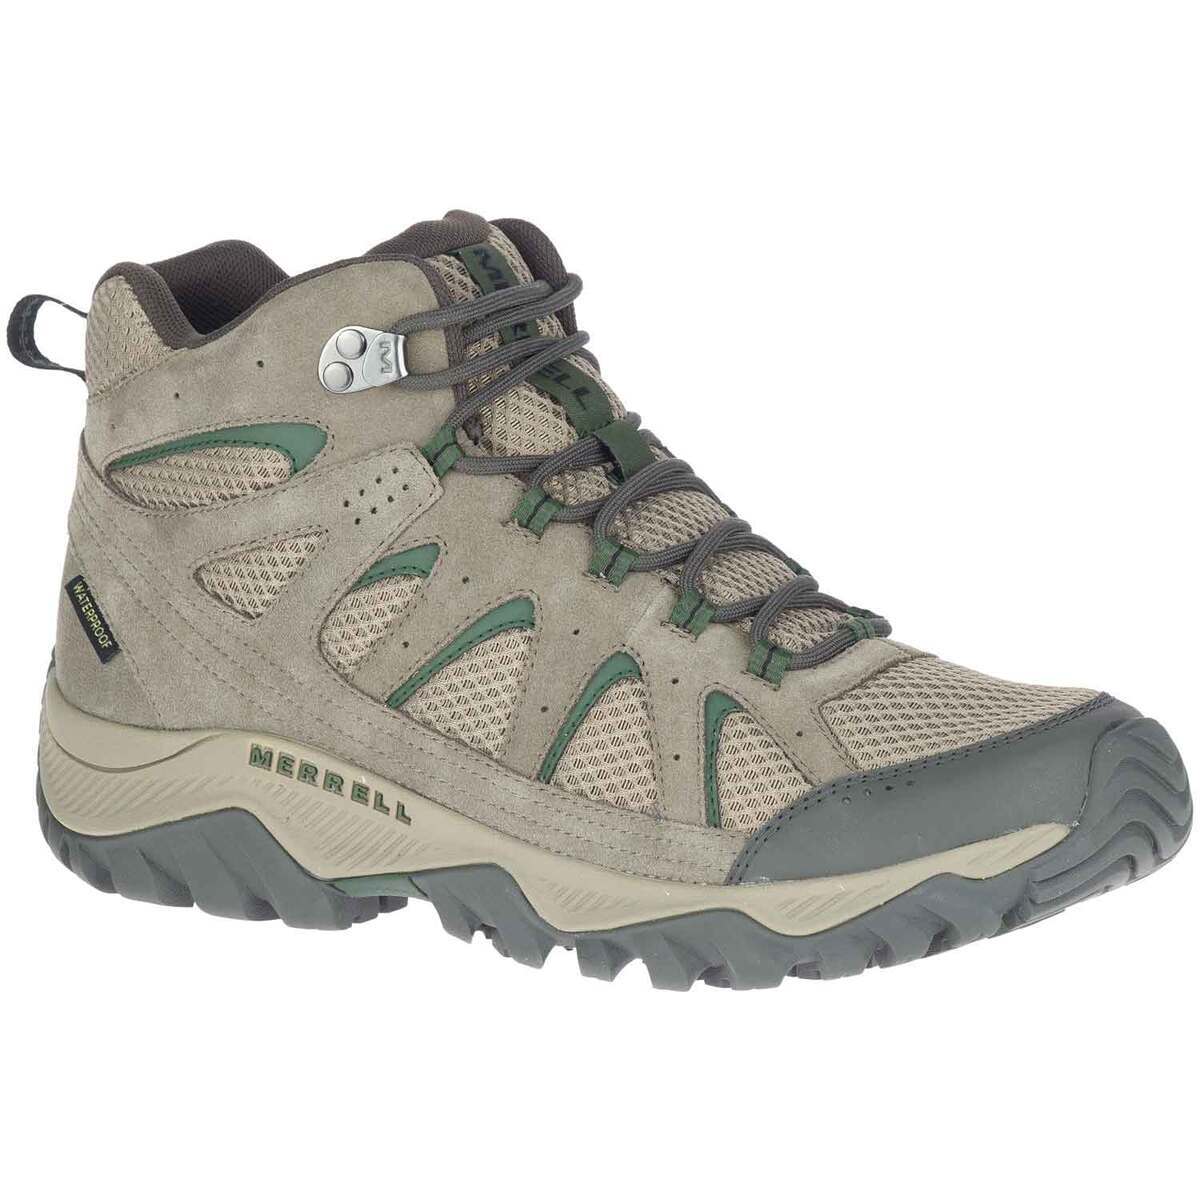 Men's Oakcreek Waterproof Mid Hiking Boots | Sportsman's Warehouse